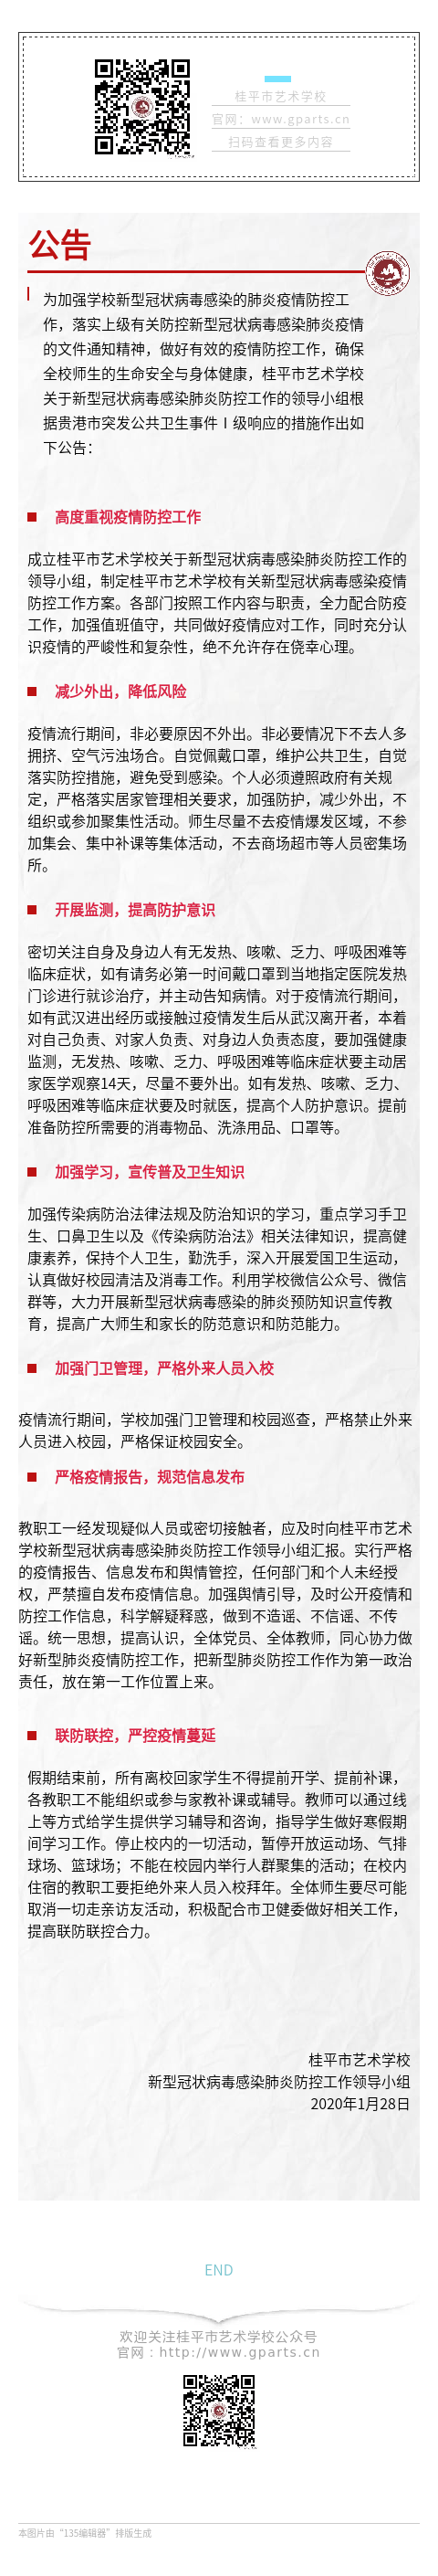 桂平市艺术学校关于新型冠状病毒感染防控工作公告